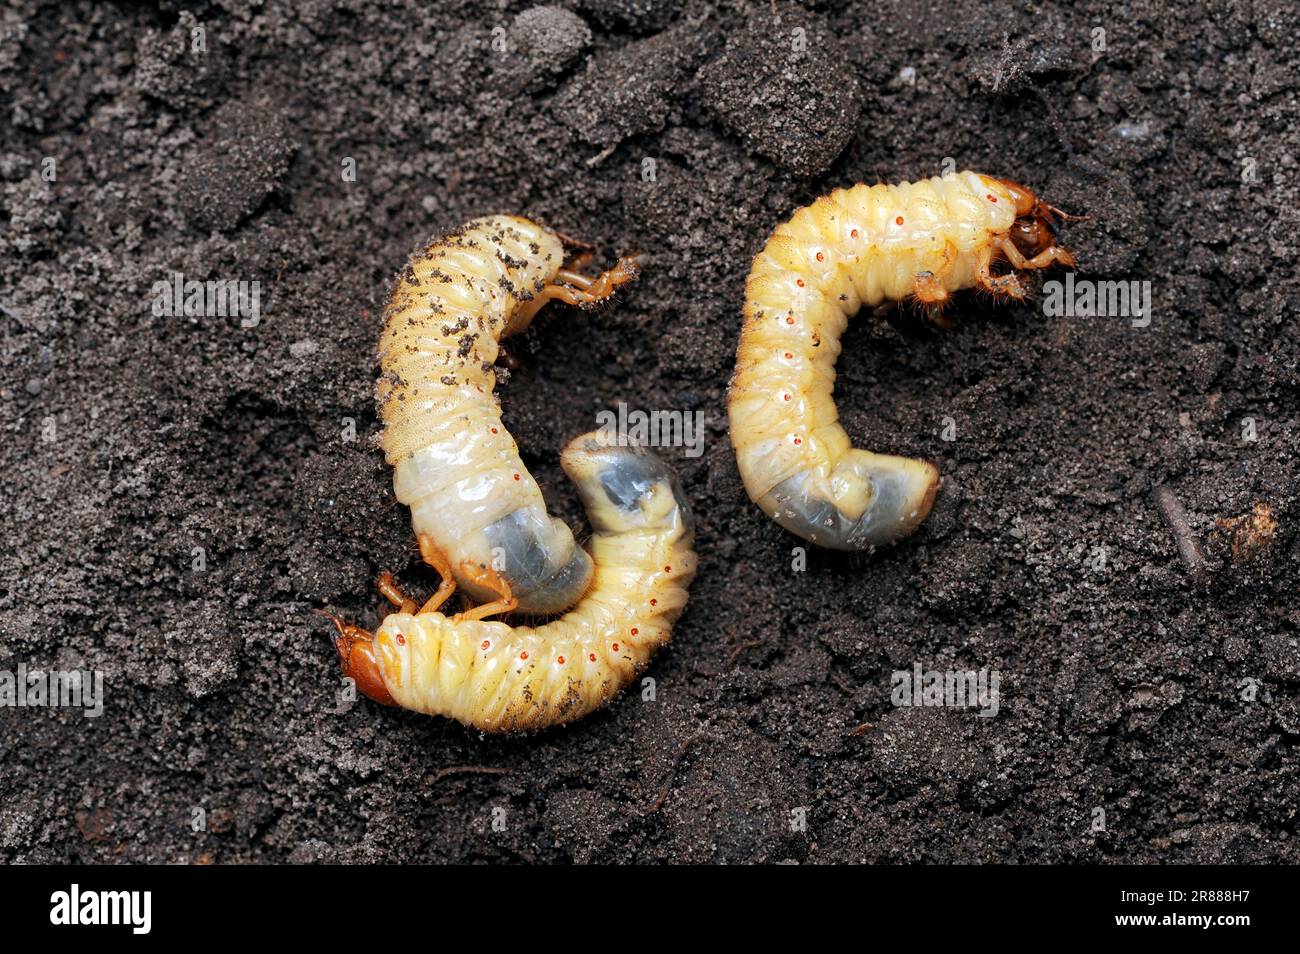 Common Cockchafer (Melolontha melolontha), larvae, North Rhine-Westphalia, Germany, Maybug Stock Photo